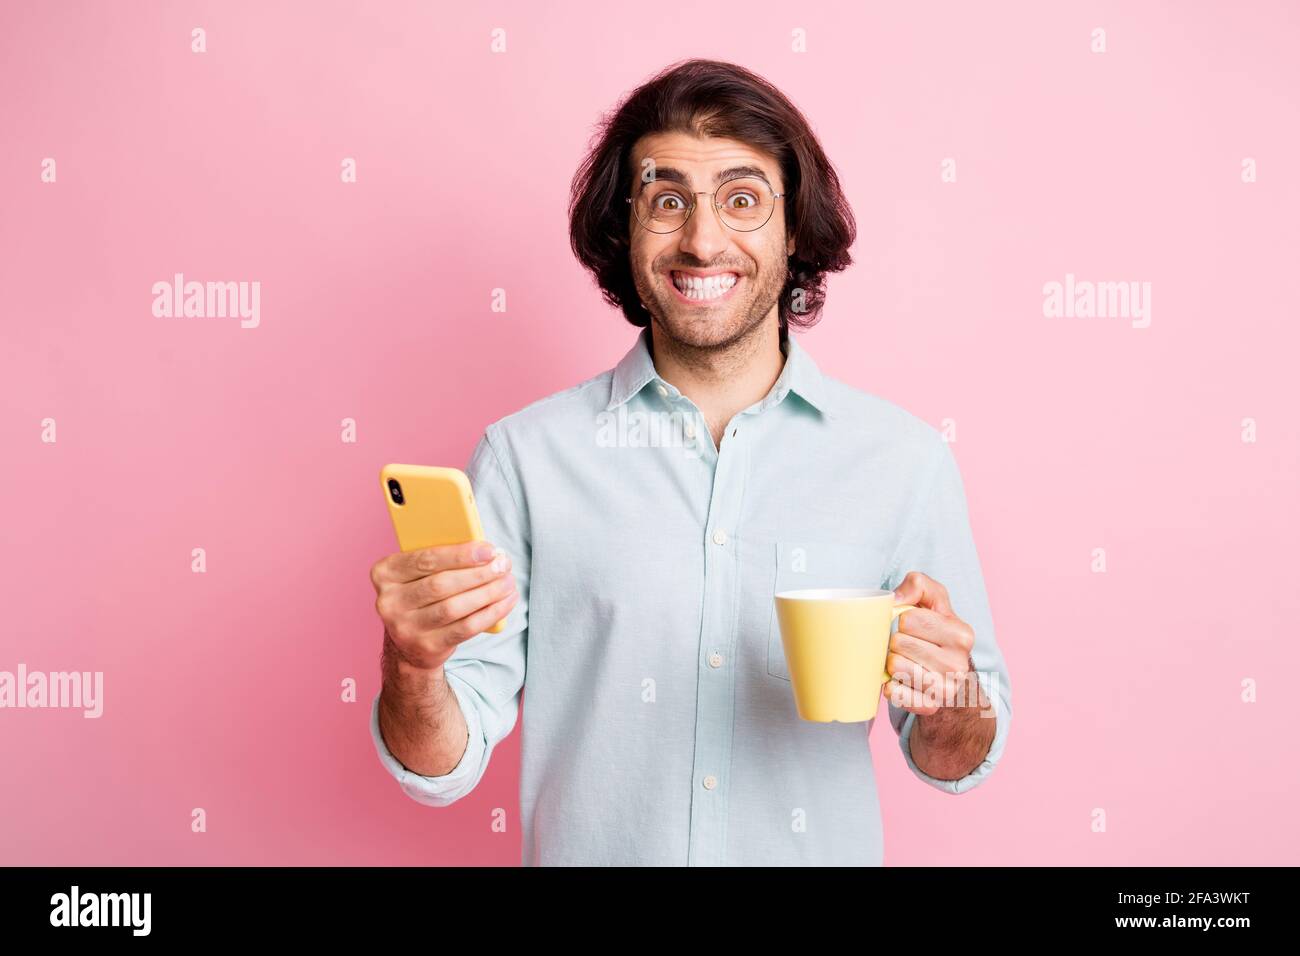 Foto von gut aussehenden fröhlich braunen Haar Kerl halten Tasse Telefon Tragen Sie Brillen blaues Hemd isoliert auf pastellrosa Hintergrund Stockfoto